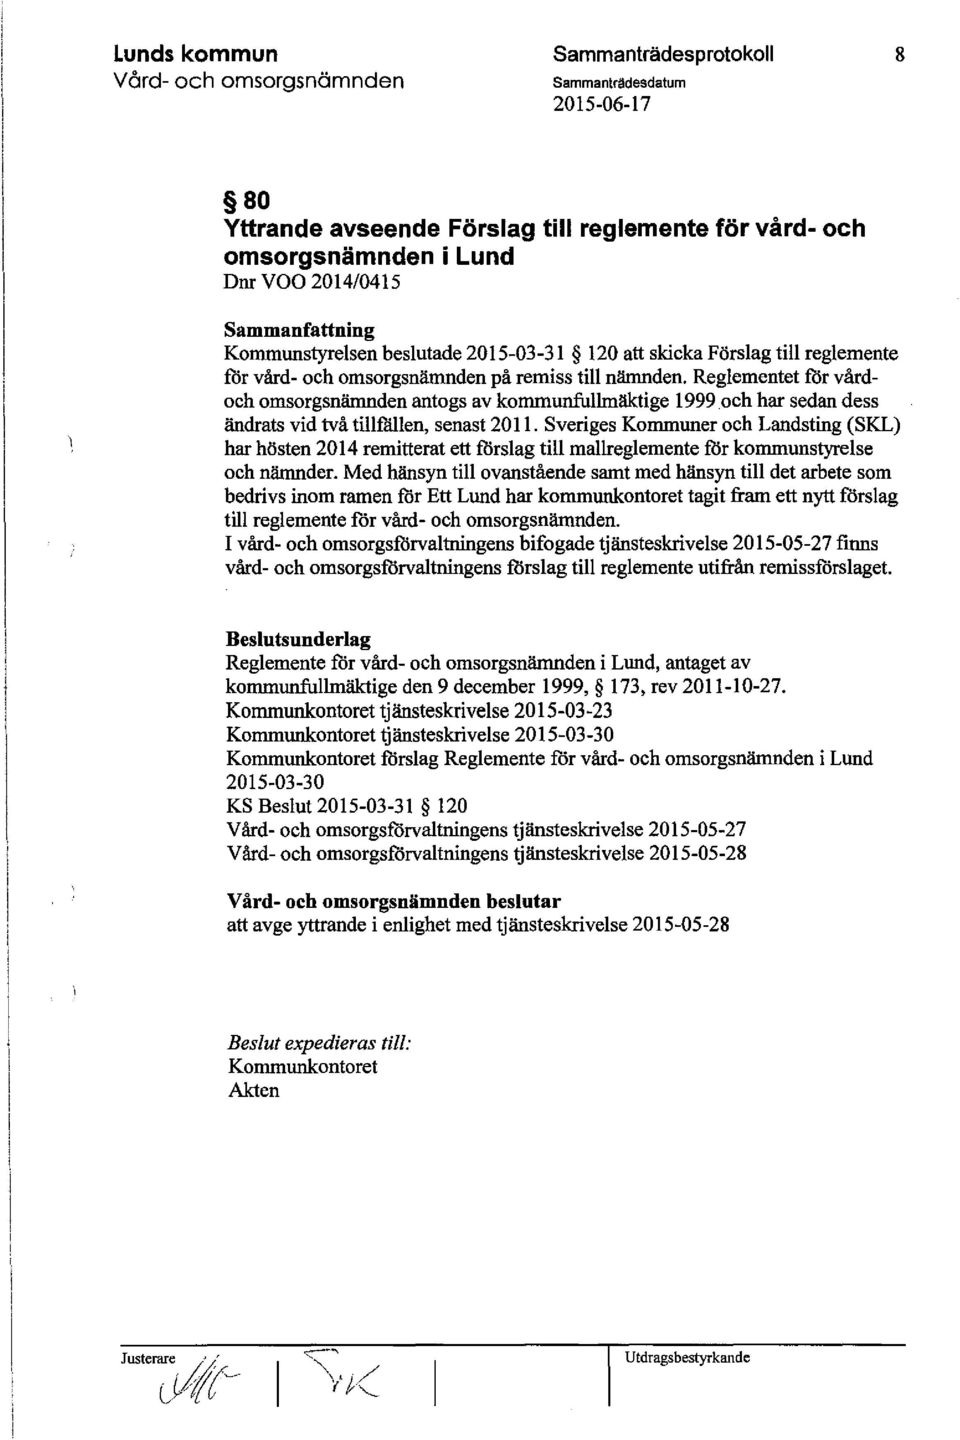 Sveriges Kommuner och Landsting (SKL) har hösten 2014 remitterat ett forslag till mallreglemente for kommunstyrelse och nämnder.